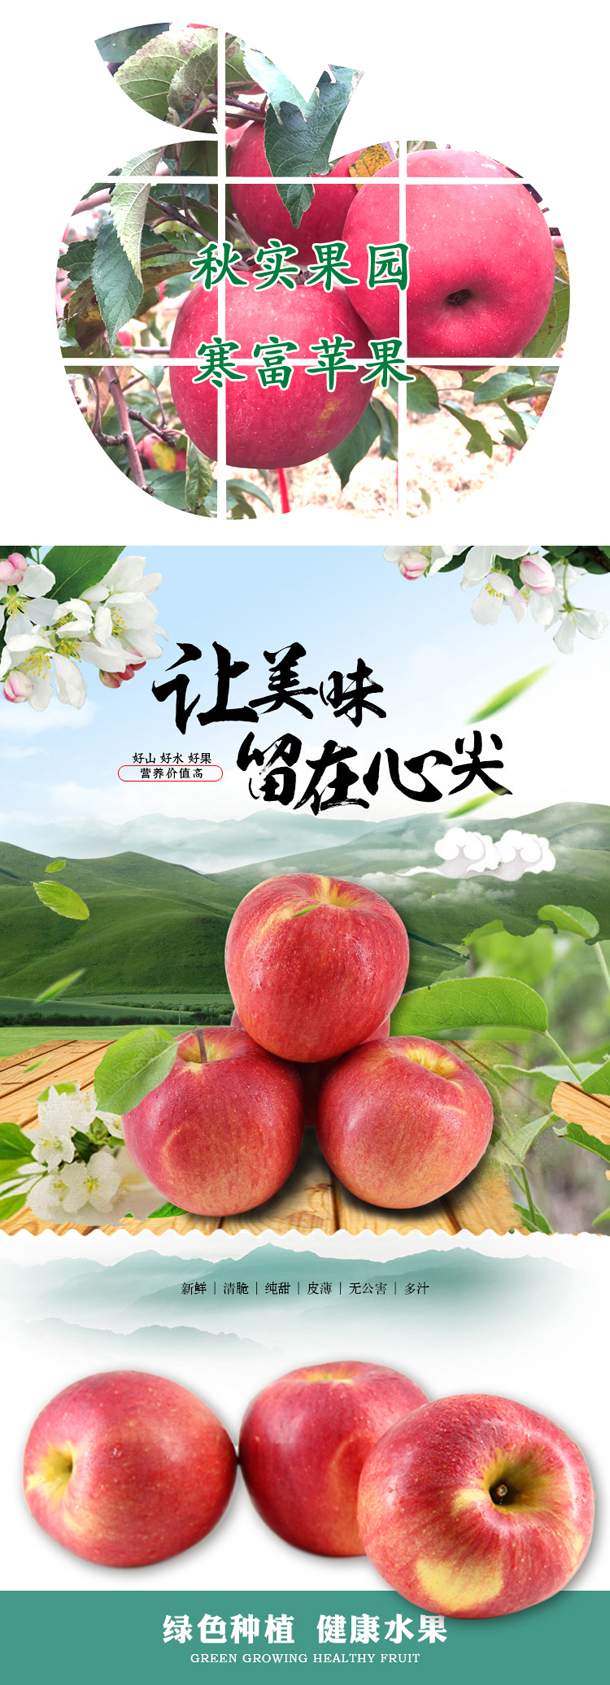 包邮新鲜水果寒富大苹果10斤辽宁农产品特产